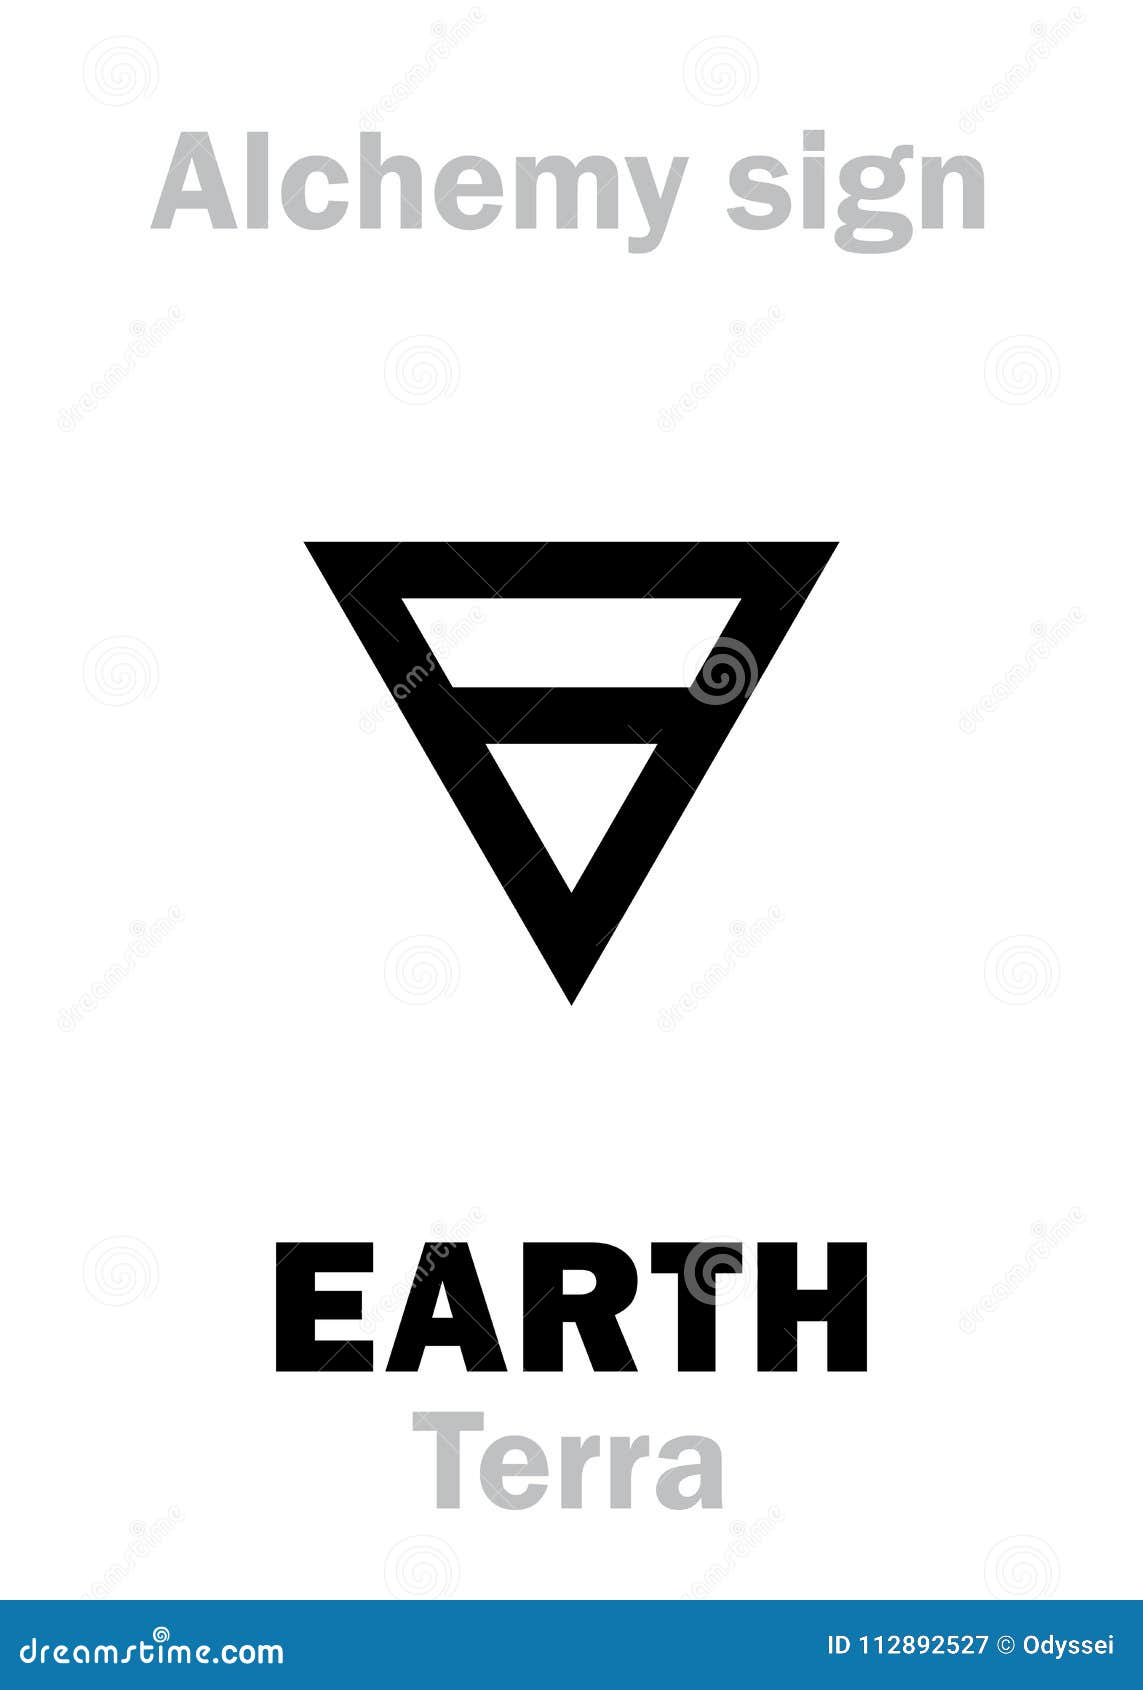 alchemy: earth (terra)